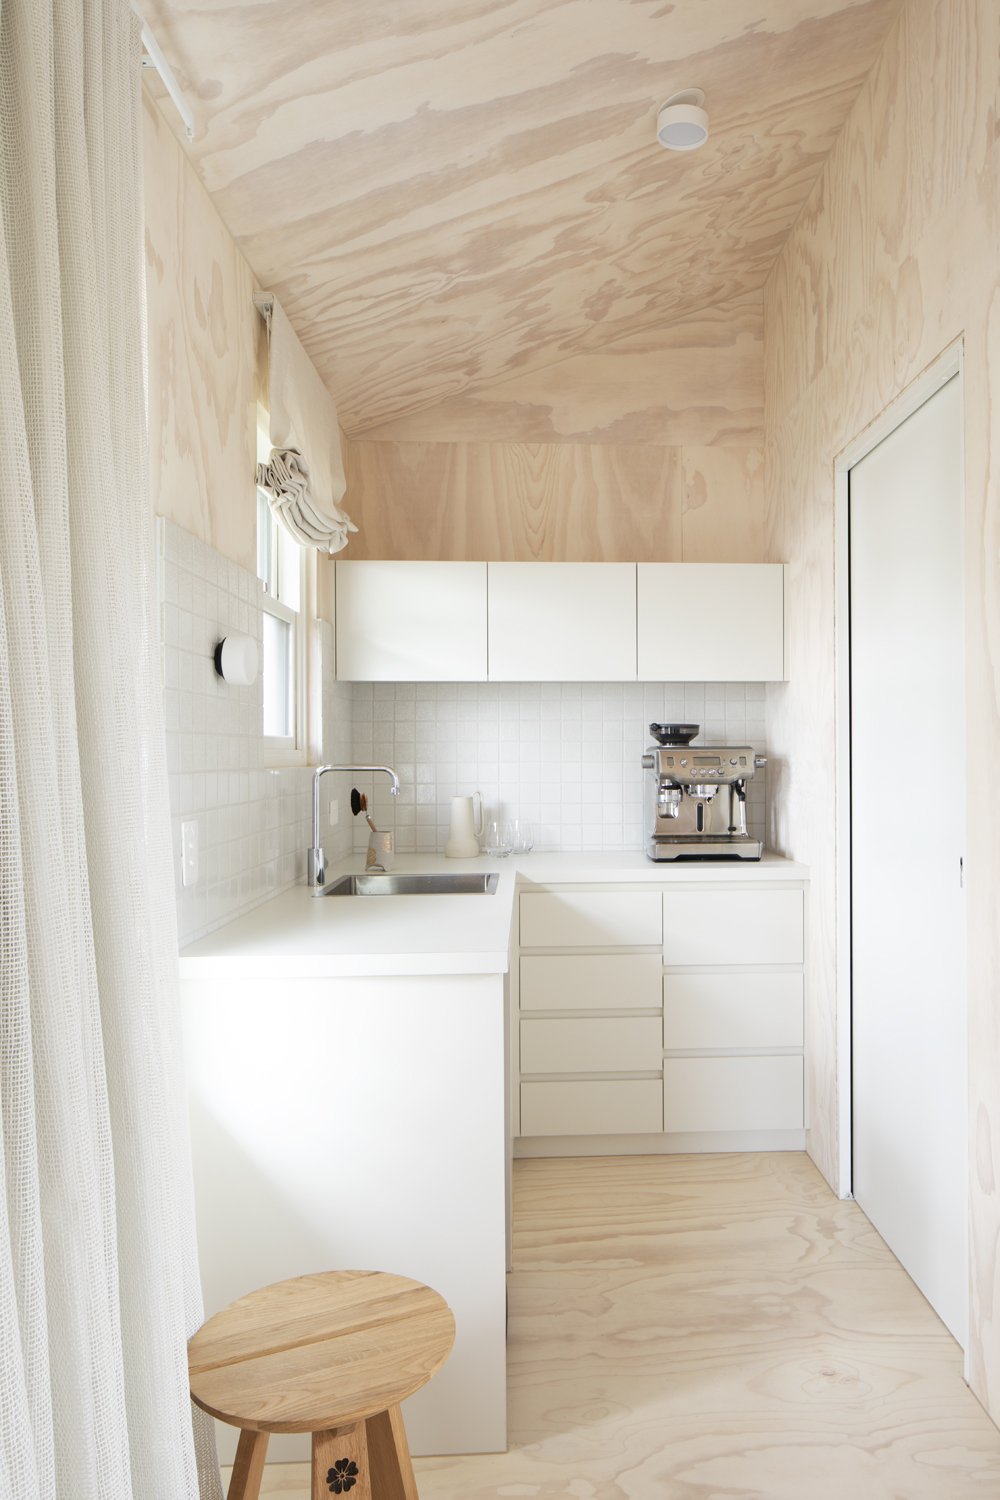 Kitchen and interior design by interior designer Meredith Lee